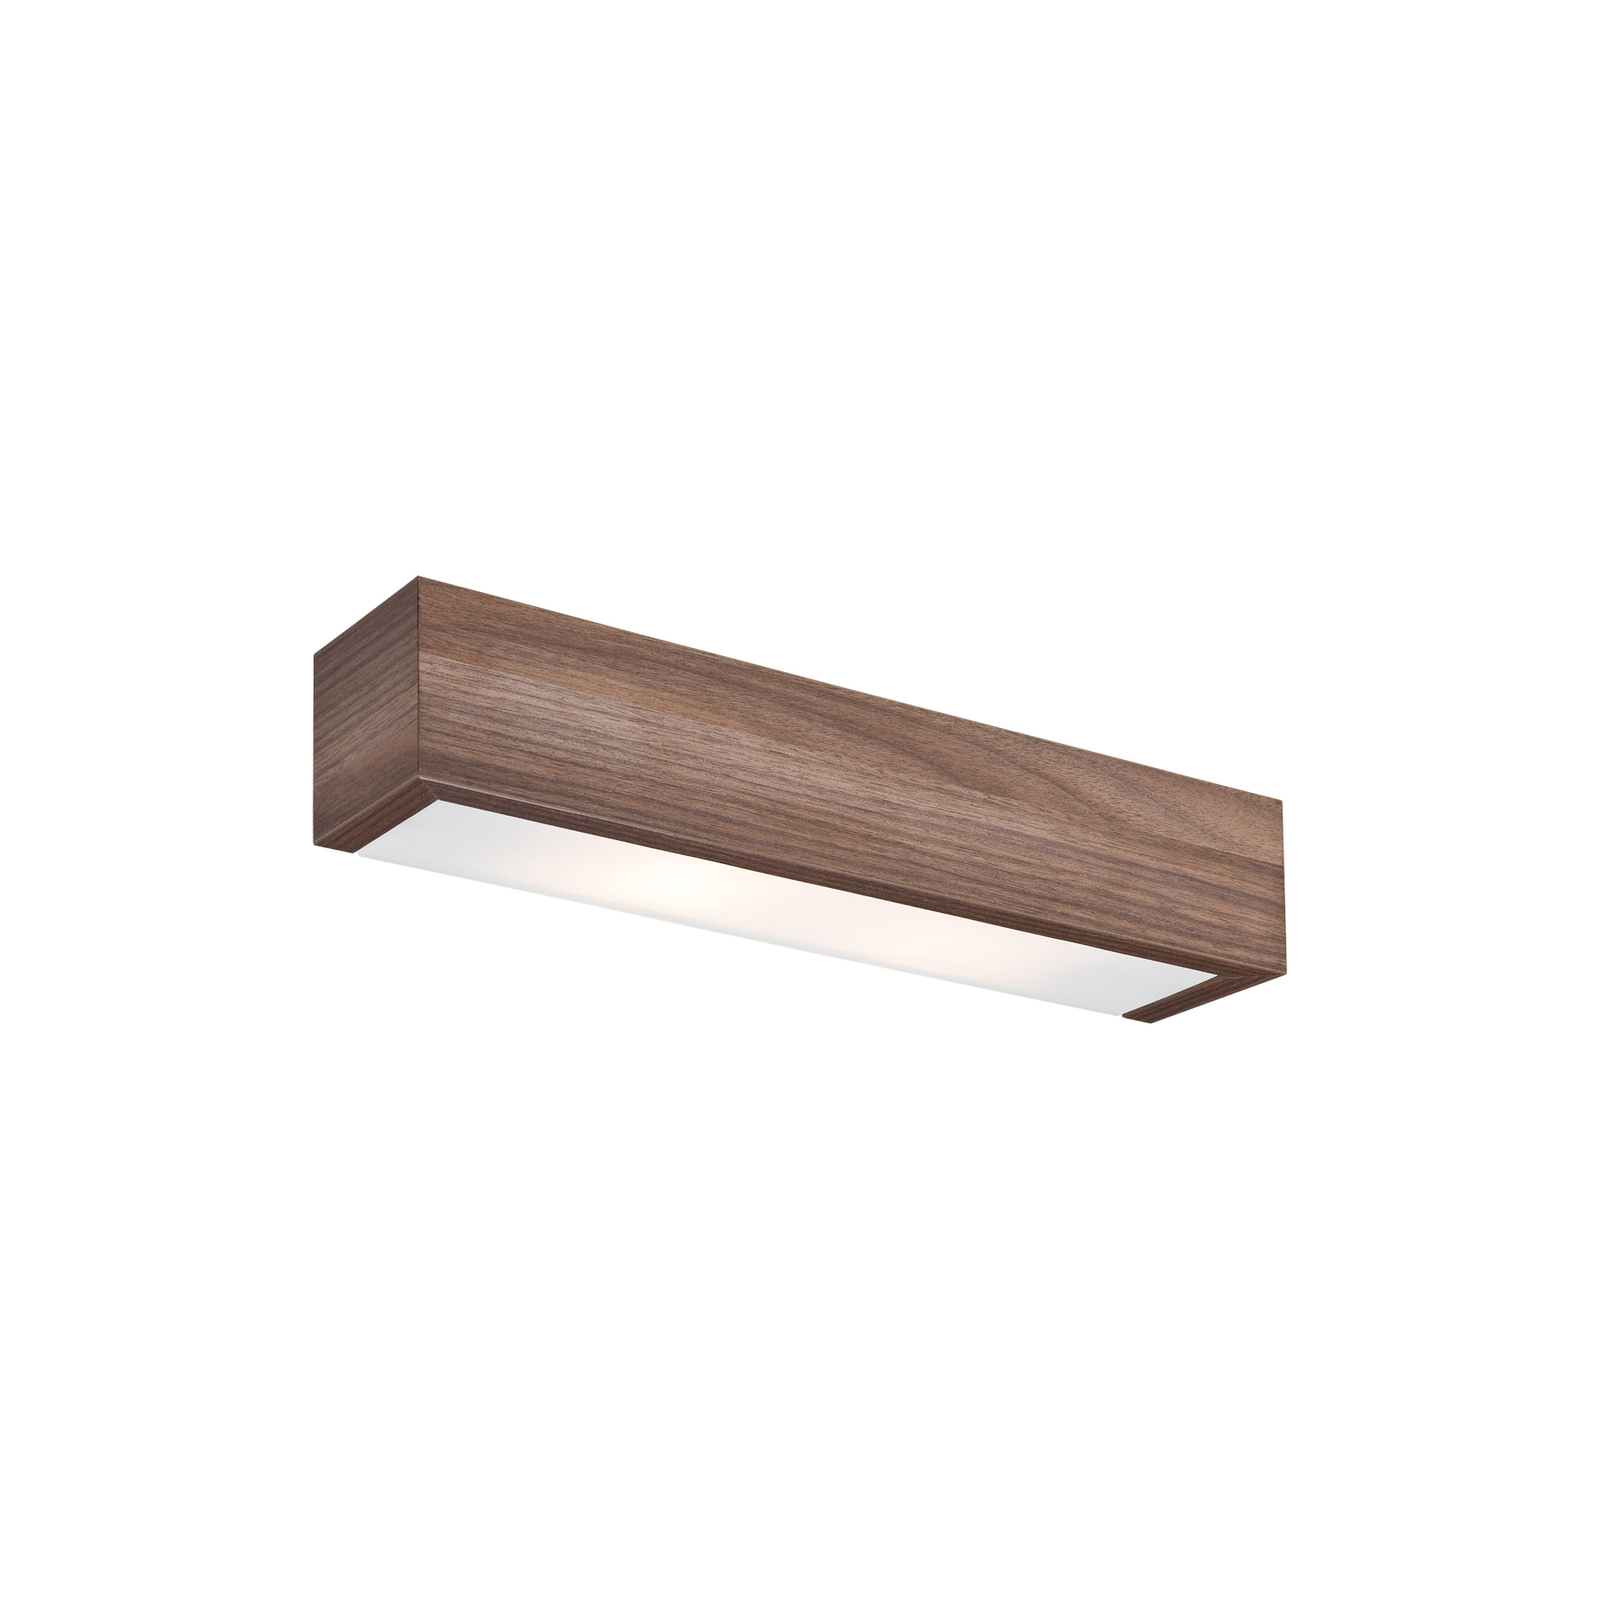 Platani wall light, walnut wood, width 42 cm, up/down